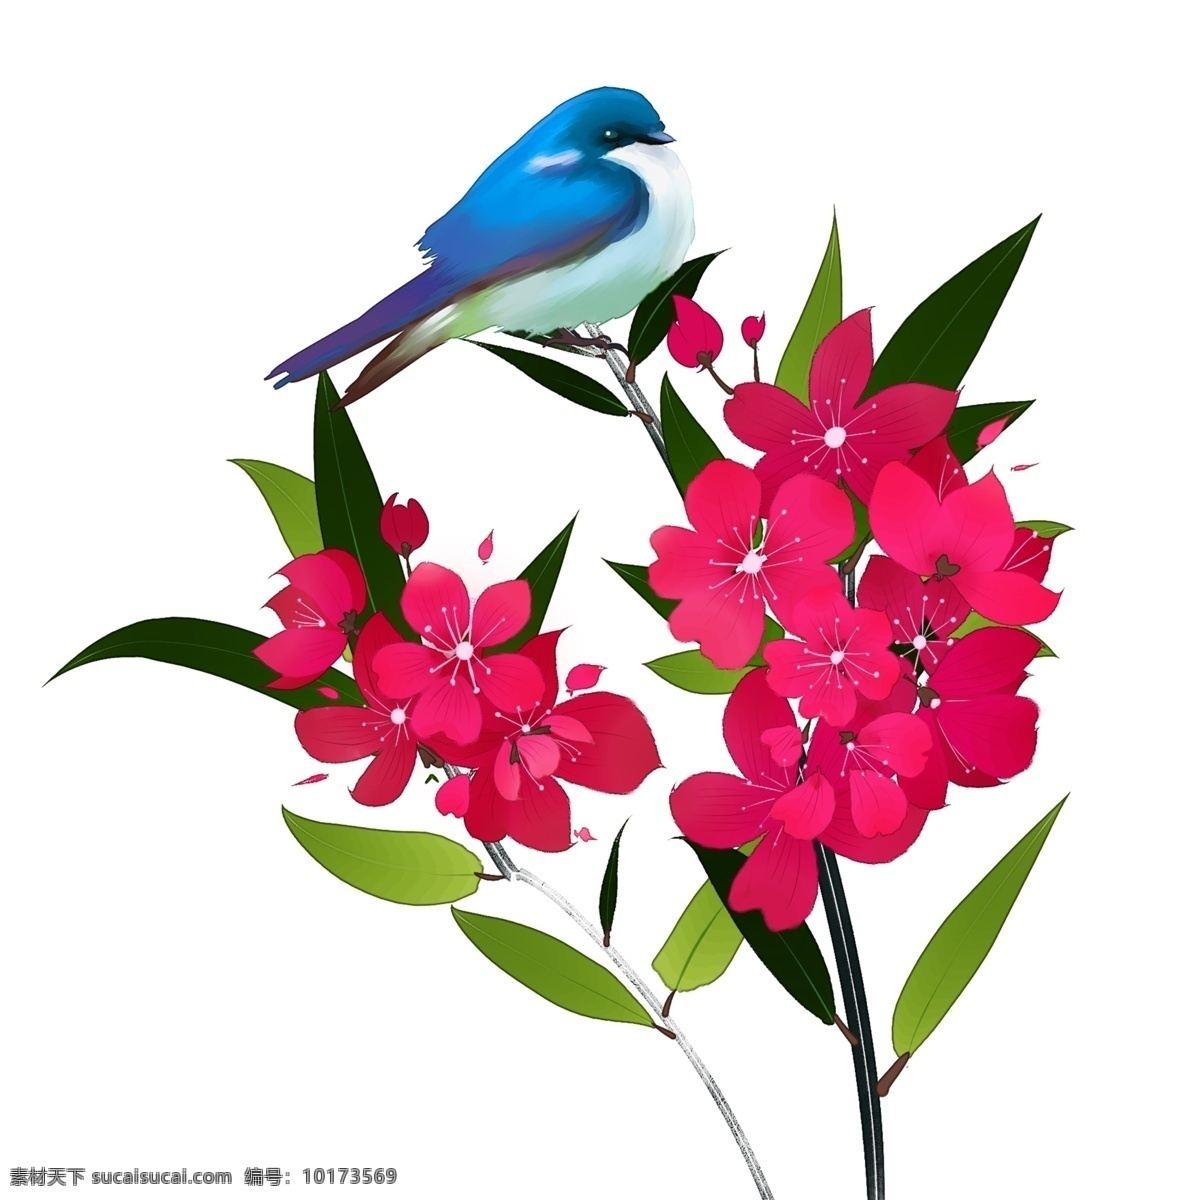 中国 风 花卉 桃色 夹竹桃 蓝色 小鸟 装饰 桃色花朵 粉红色花朵 鸟 蓝色小鸟 中国风 漂亮的花 装饰画 手绘花朵 手绘鸟